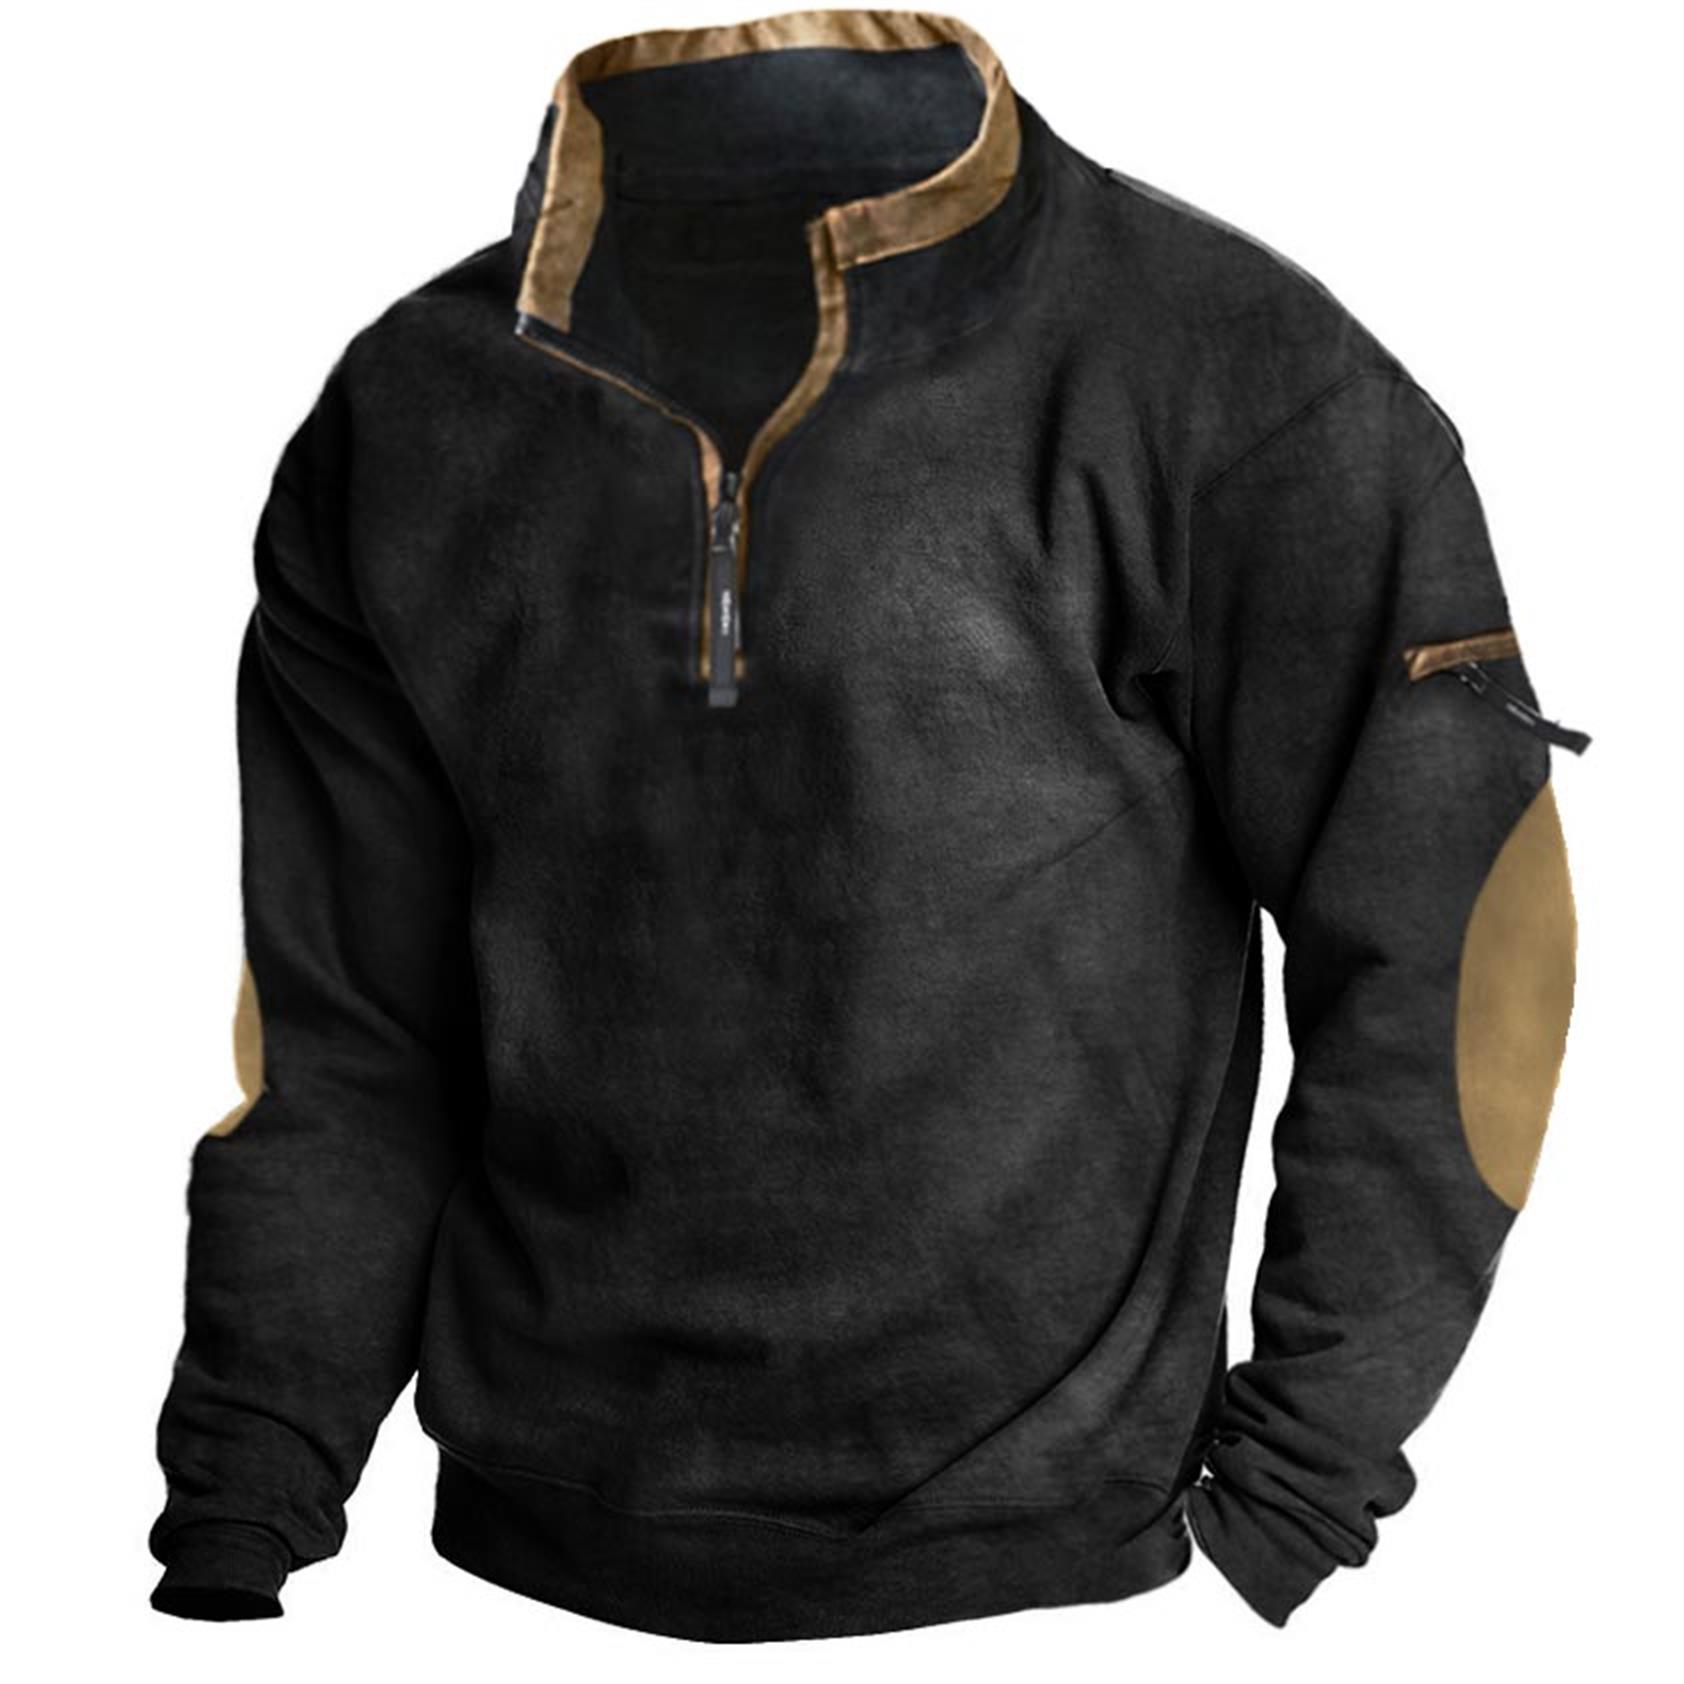 Men's Outdoor Tactical Quarter Chic Zip Sweatshirt